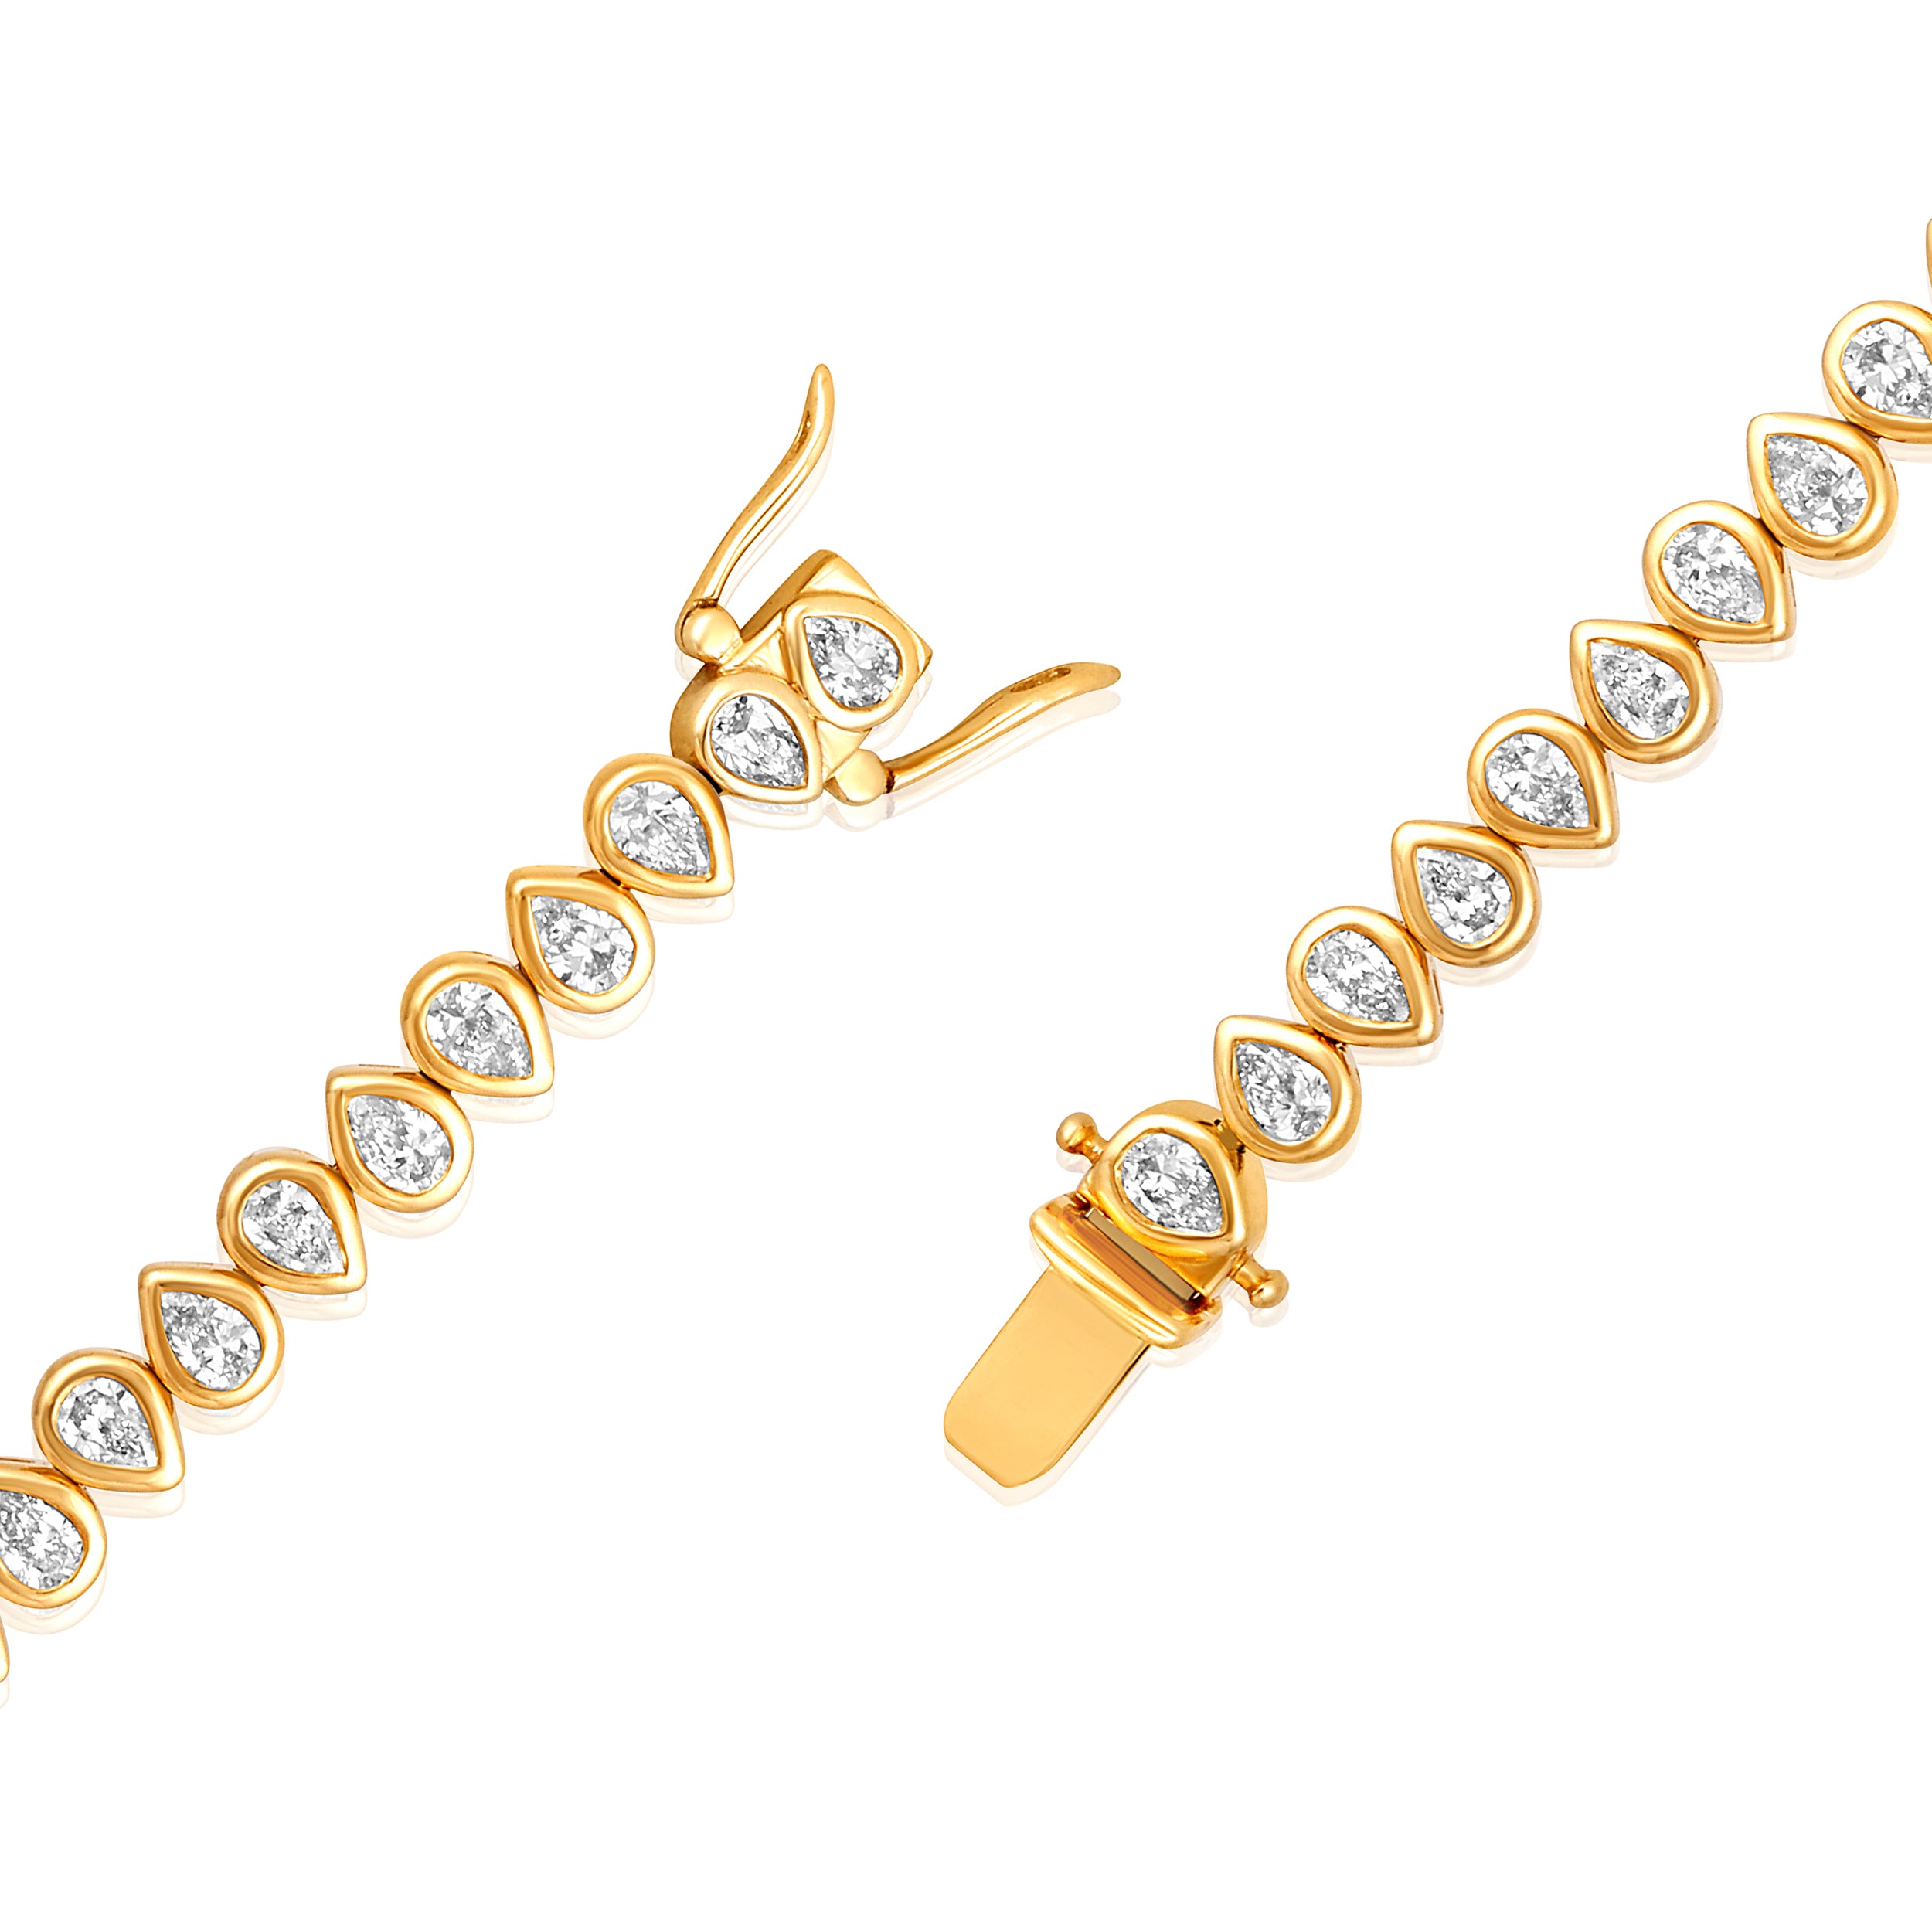 Certified 14K Gold 3.4ct Natural Diamond F-VS Pear Teardrop Bezel Tennis Bracelet